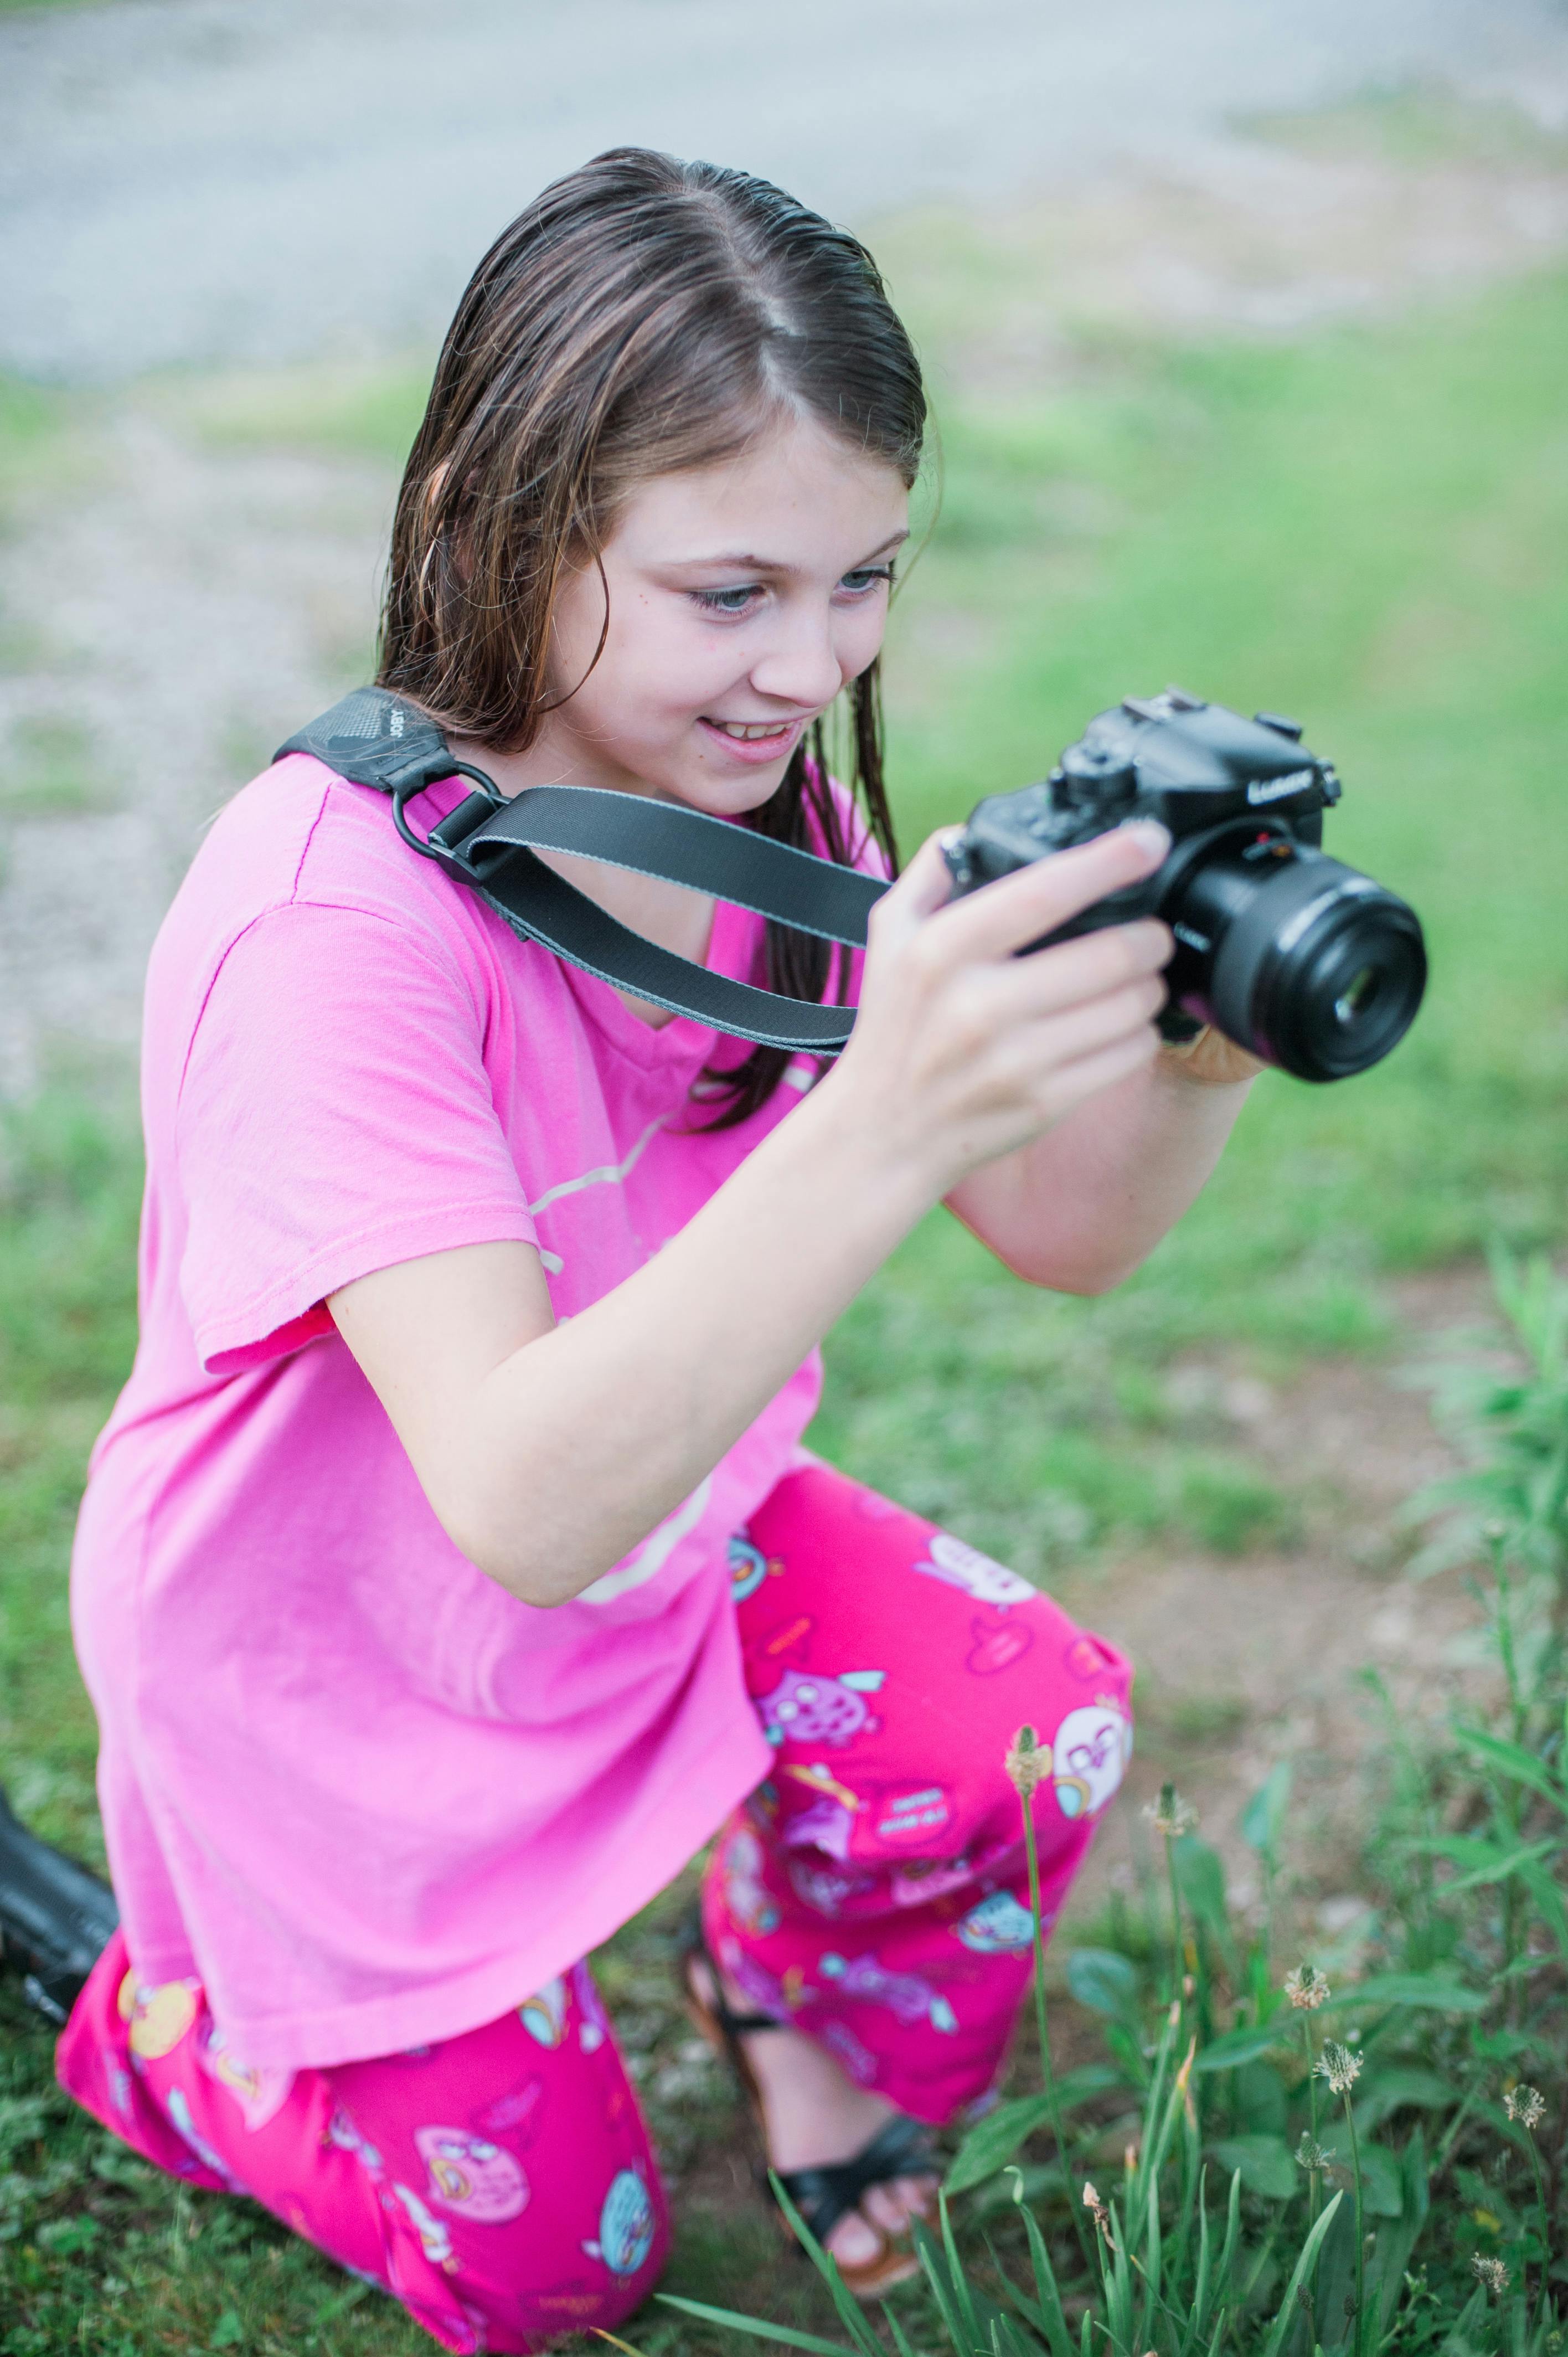 黒のデジタル一眼レフカメラを保持しているピンクの丸首のシャツを着た女の子の浅い焦点の写真 無料の写真素材